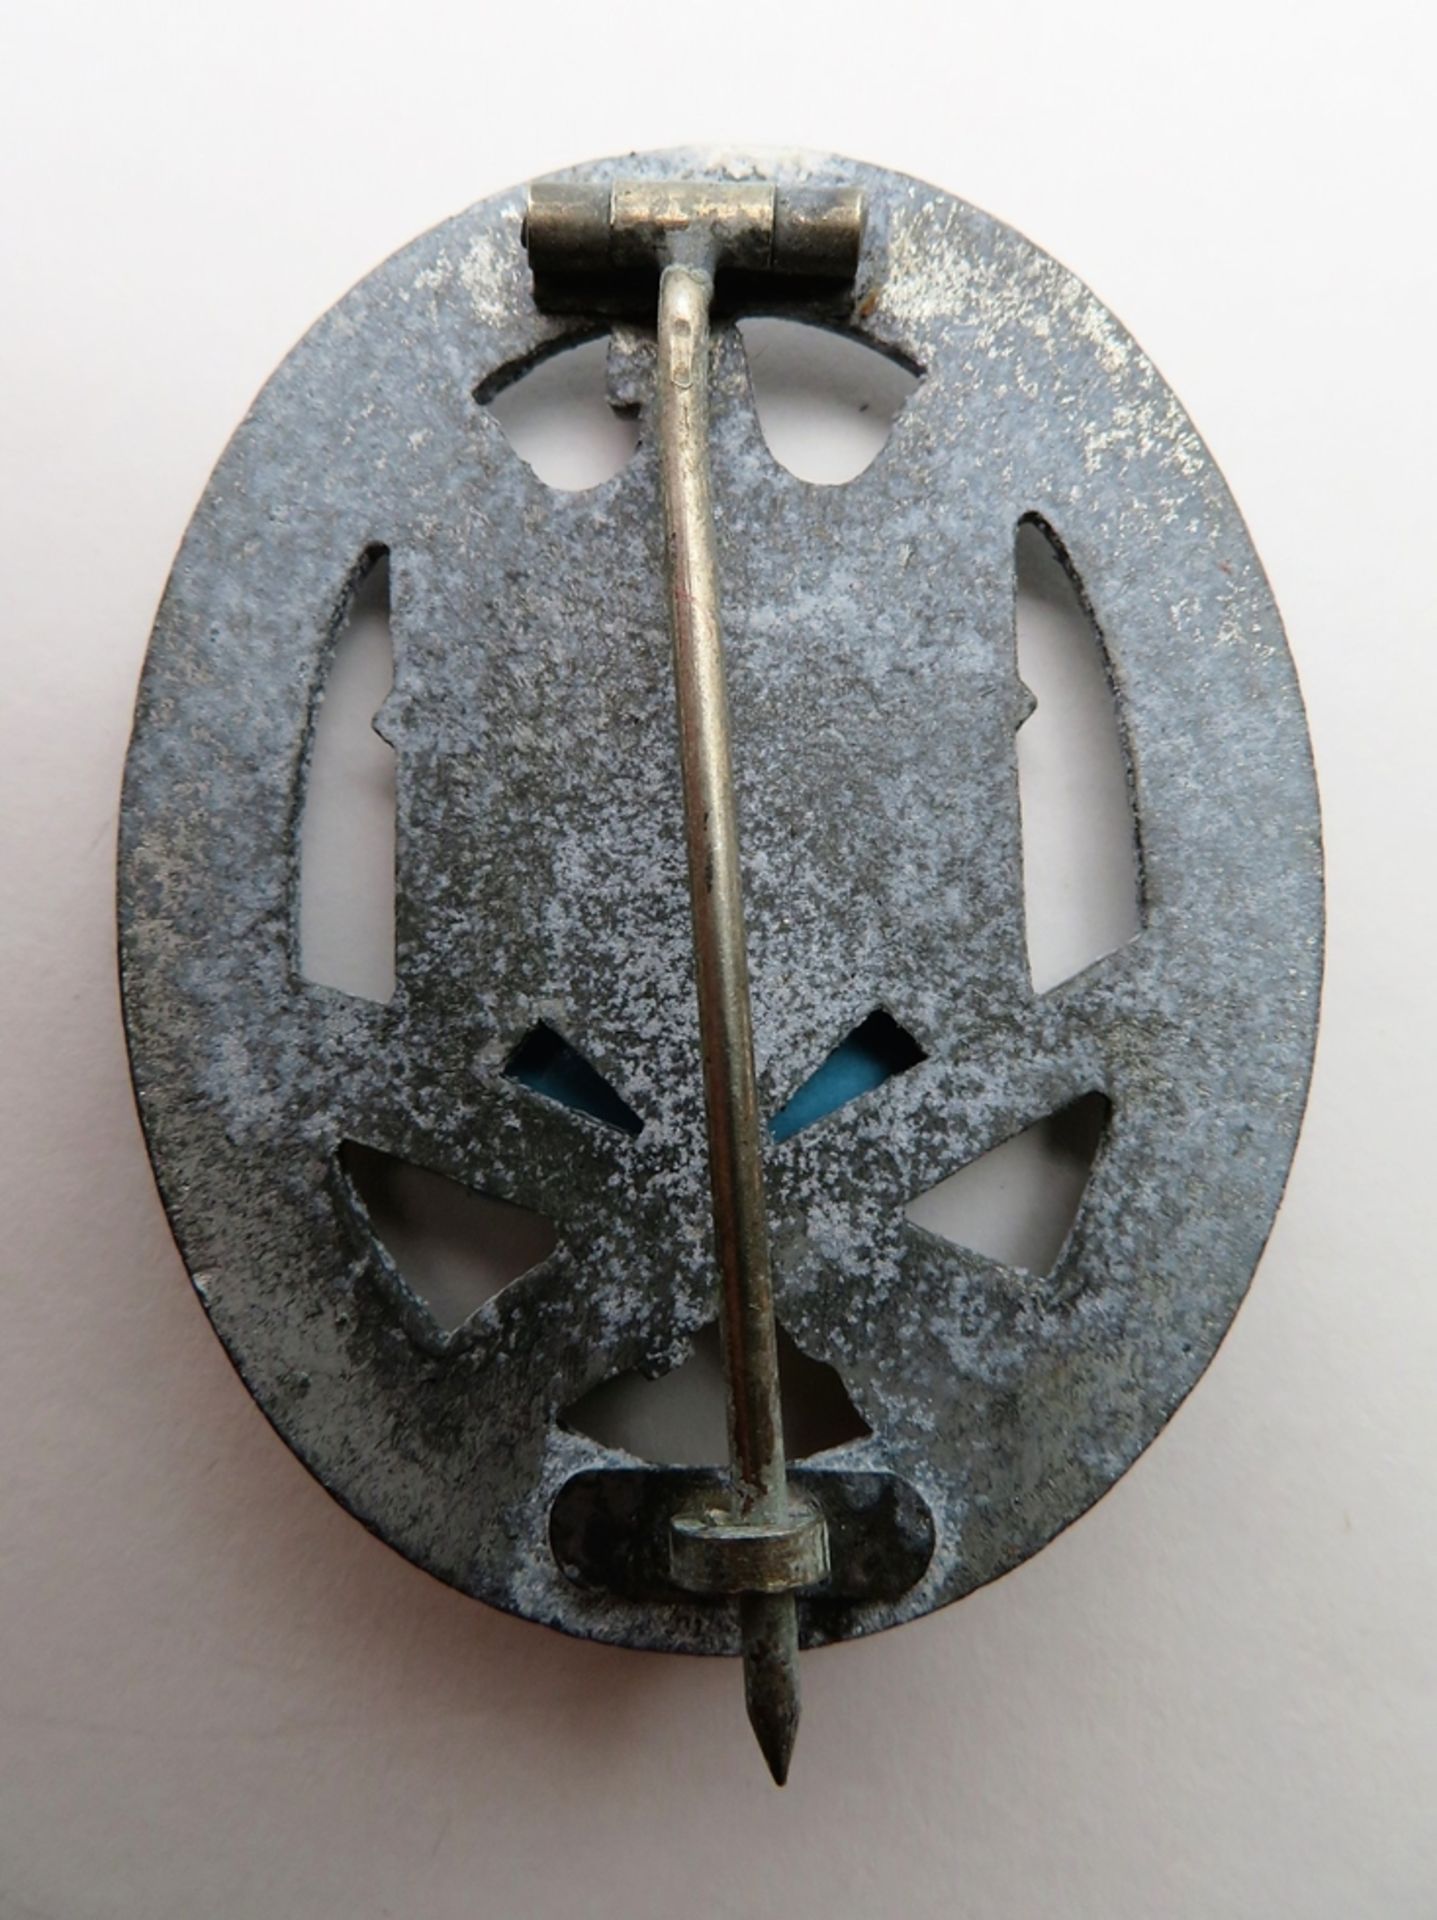 Allgemeines Sturmabzeichen, 2. Weltkrieg, Zink versilbert, durchbrochen gefertigt, an Nadel, 5,1 x - Image 2 of 2